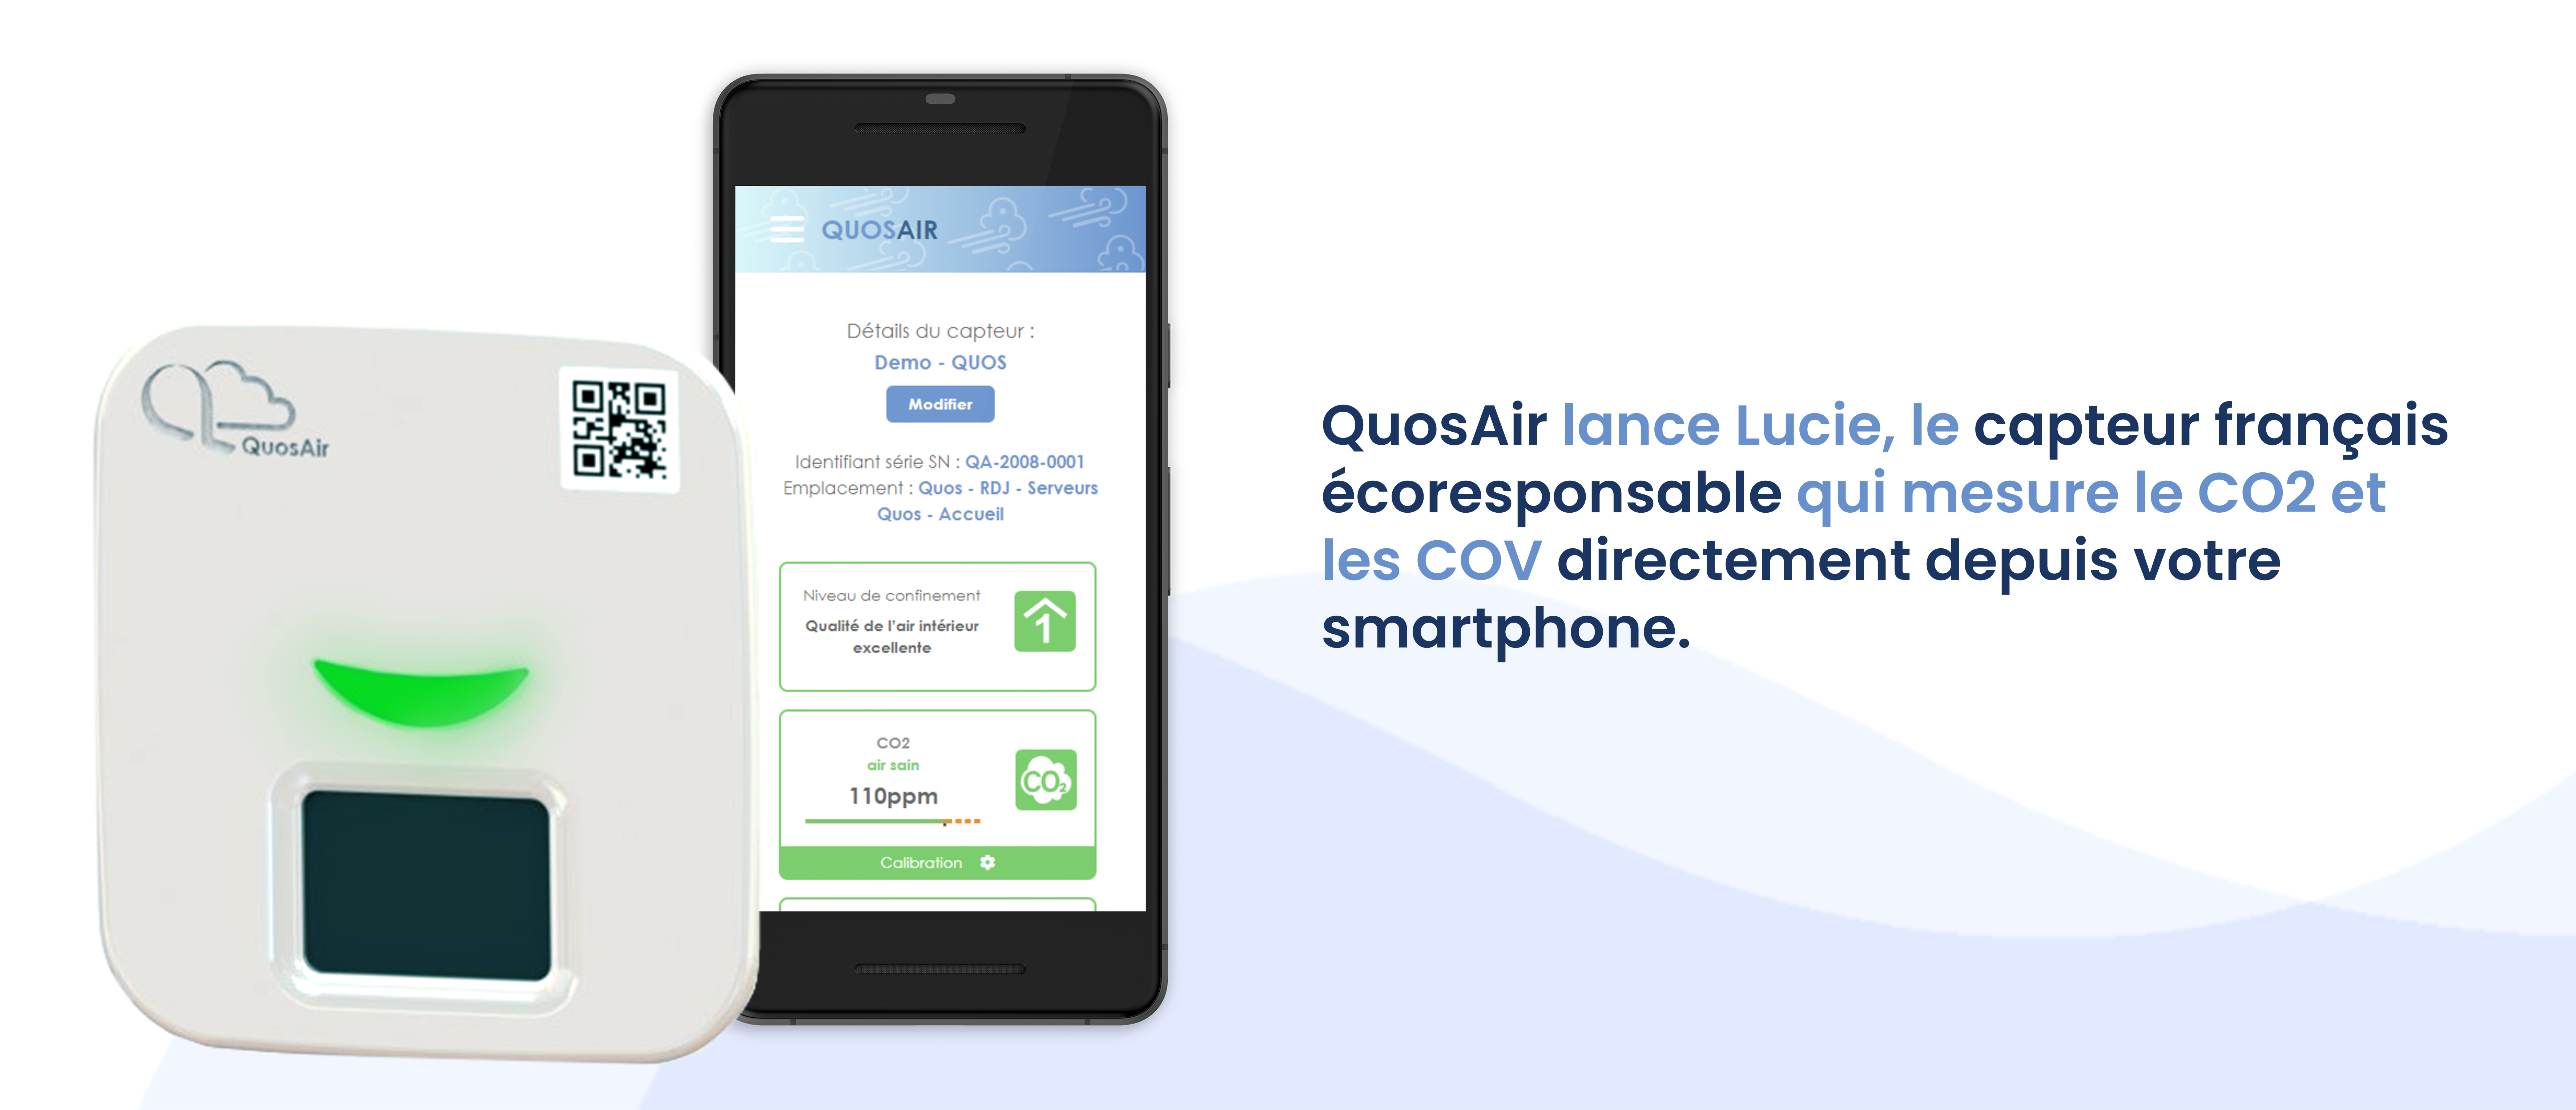 Lire la suite à propos de l’article QuosAir lance Lucie, le capteur français écoresponsable qui mesure le CO2 et les COV directement depuis votre smartphone.